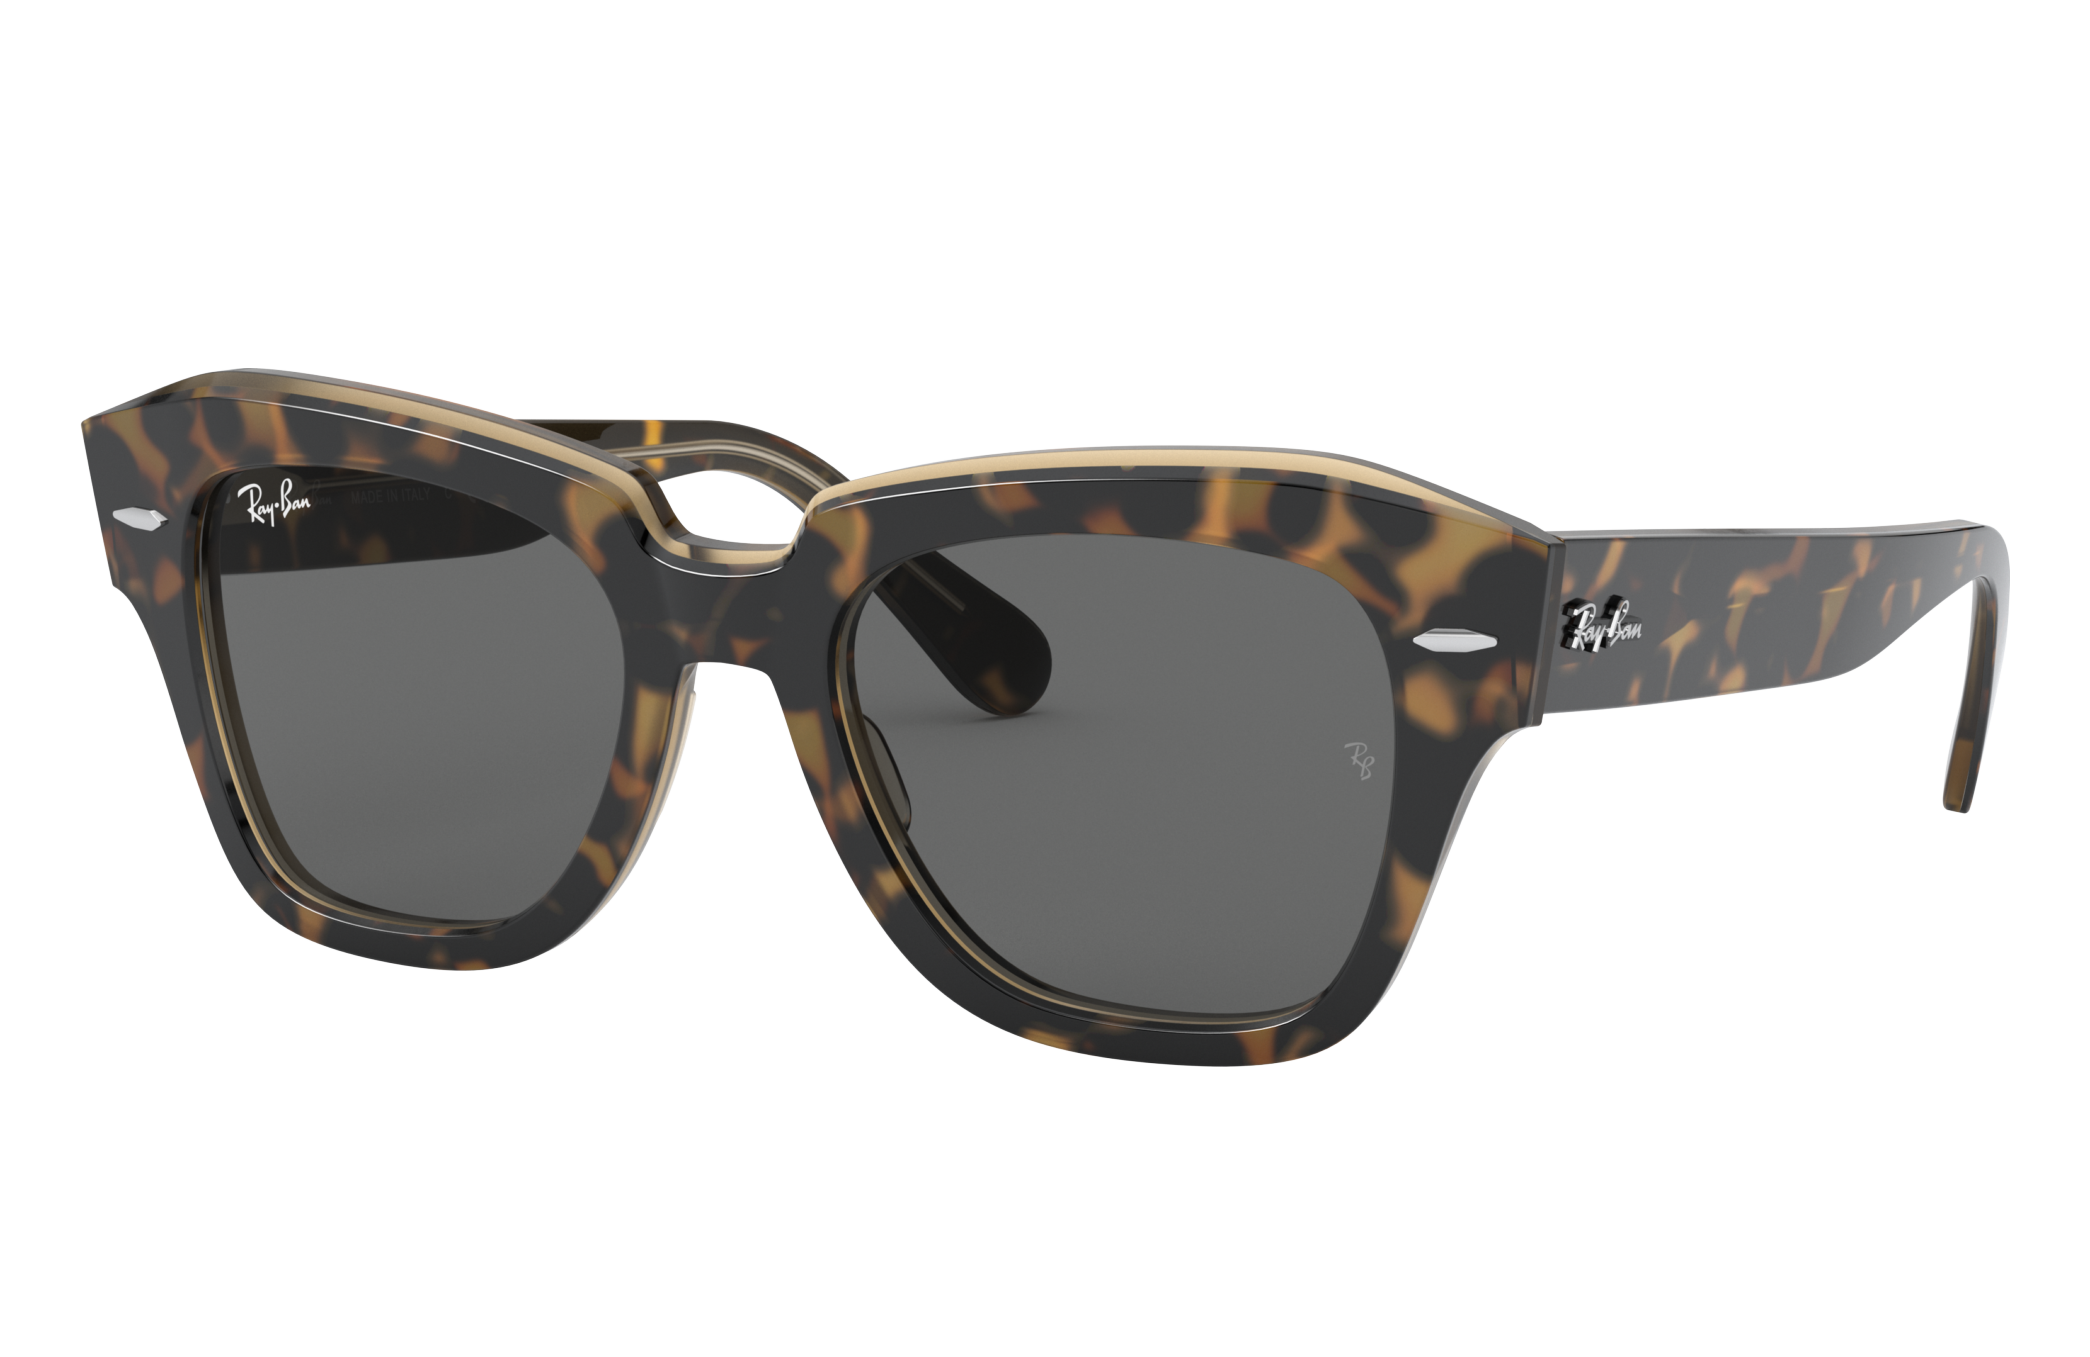 Ray Ban State Street Sunglasses Tortoise Frame Grey Lenses 52-20